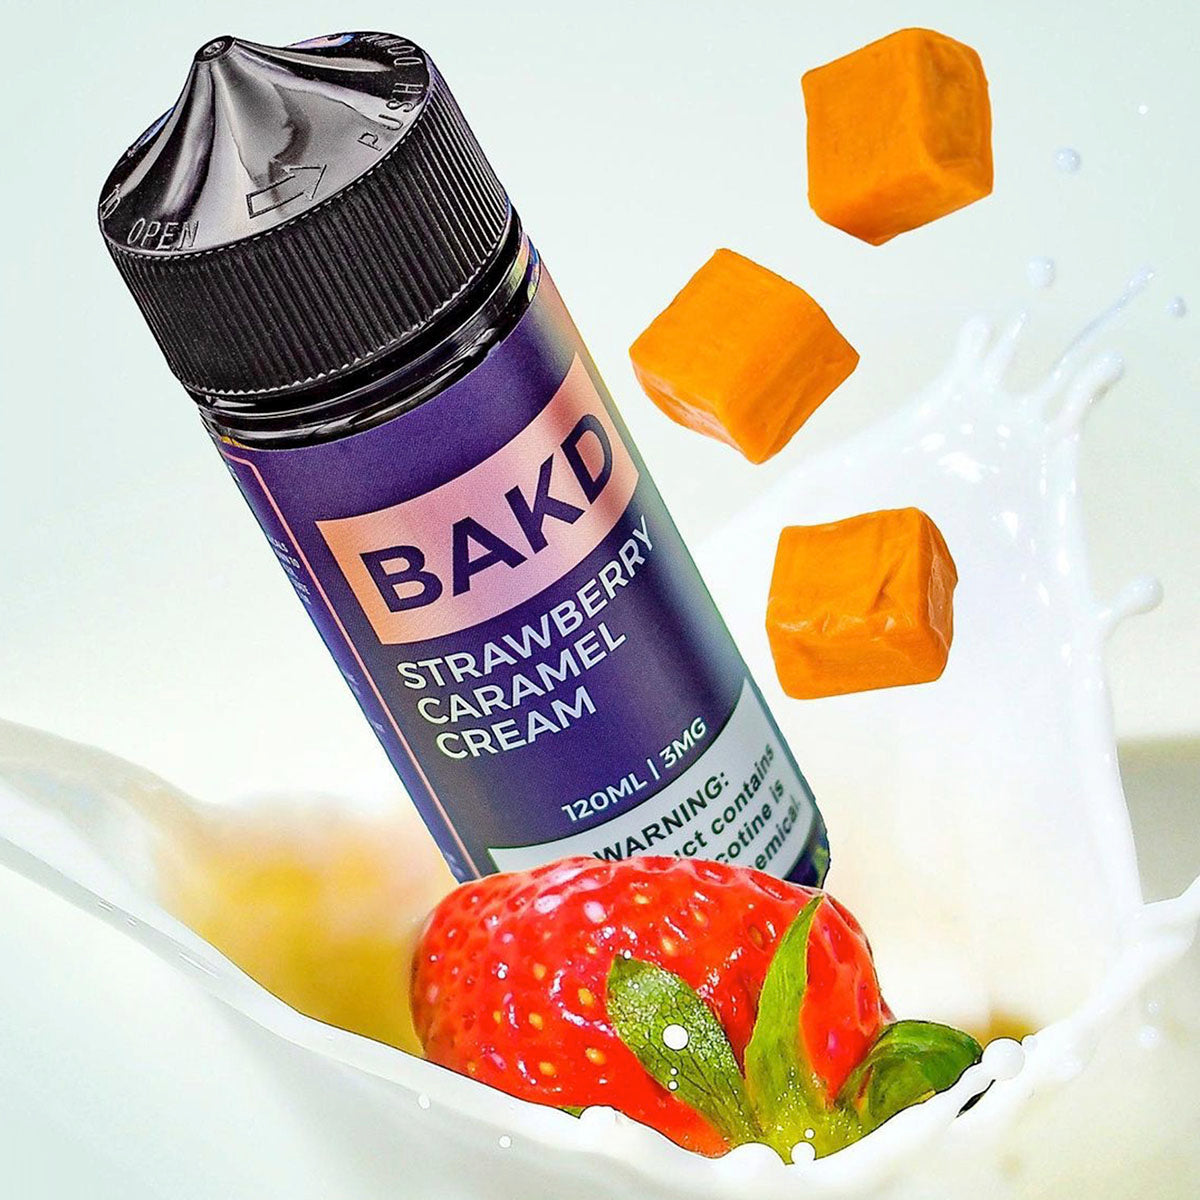 Strawberry Caramel Cream - BAKD 100ml Shortfill by Grimm X Ohmboy OC